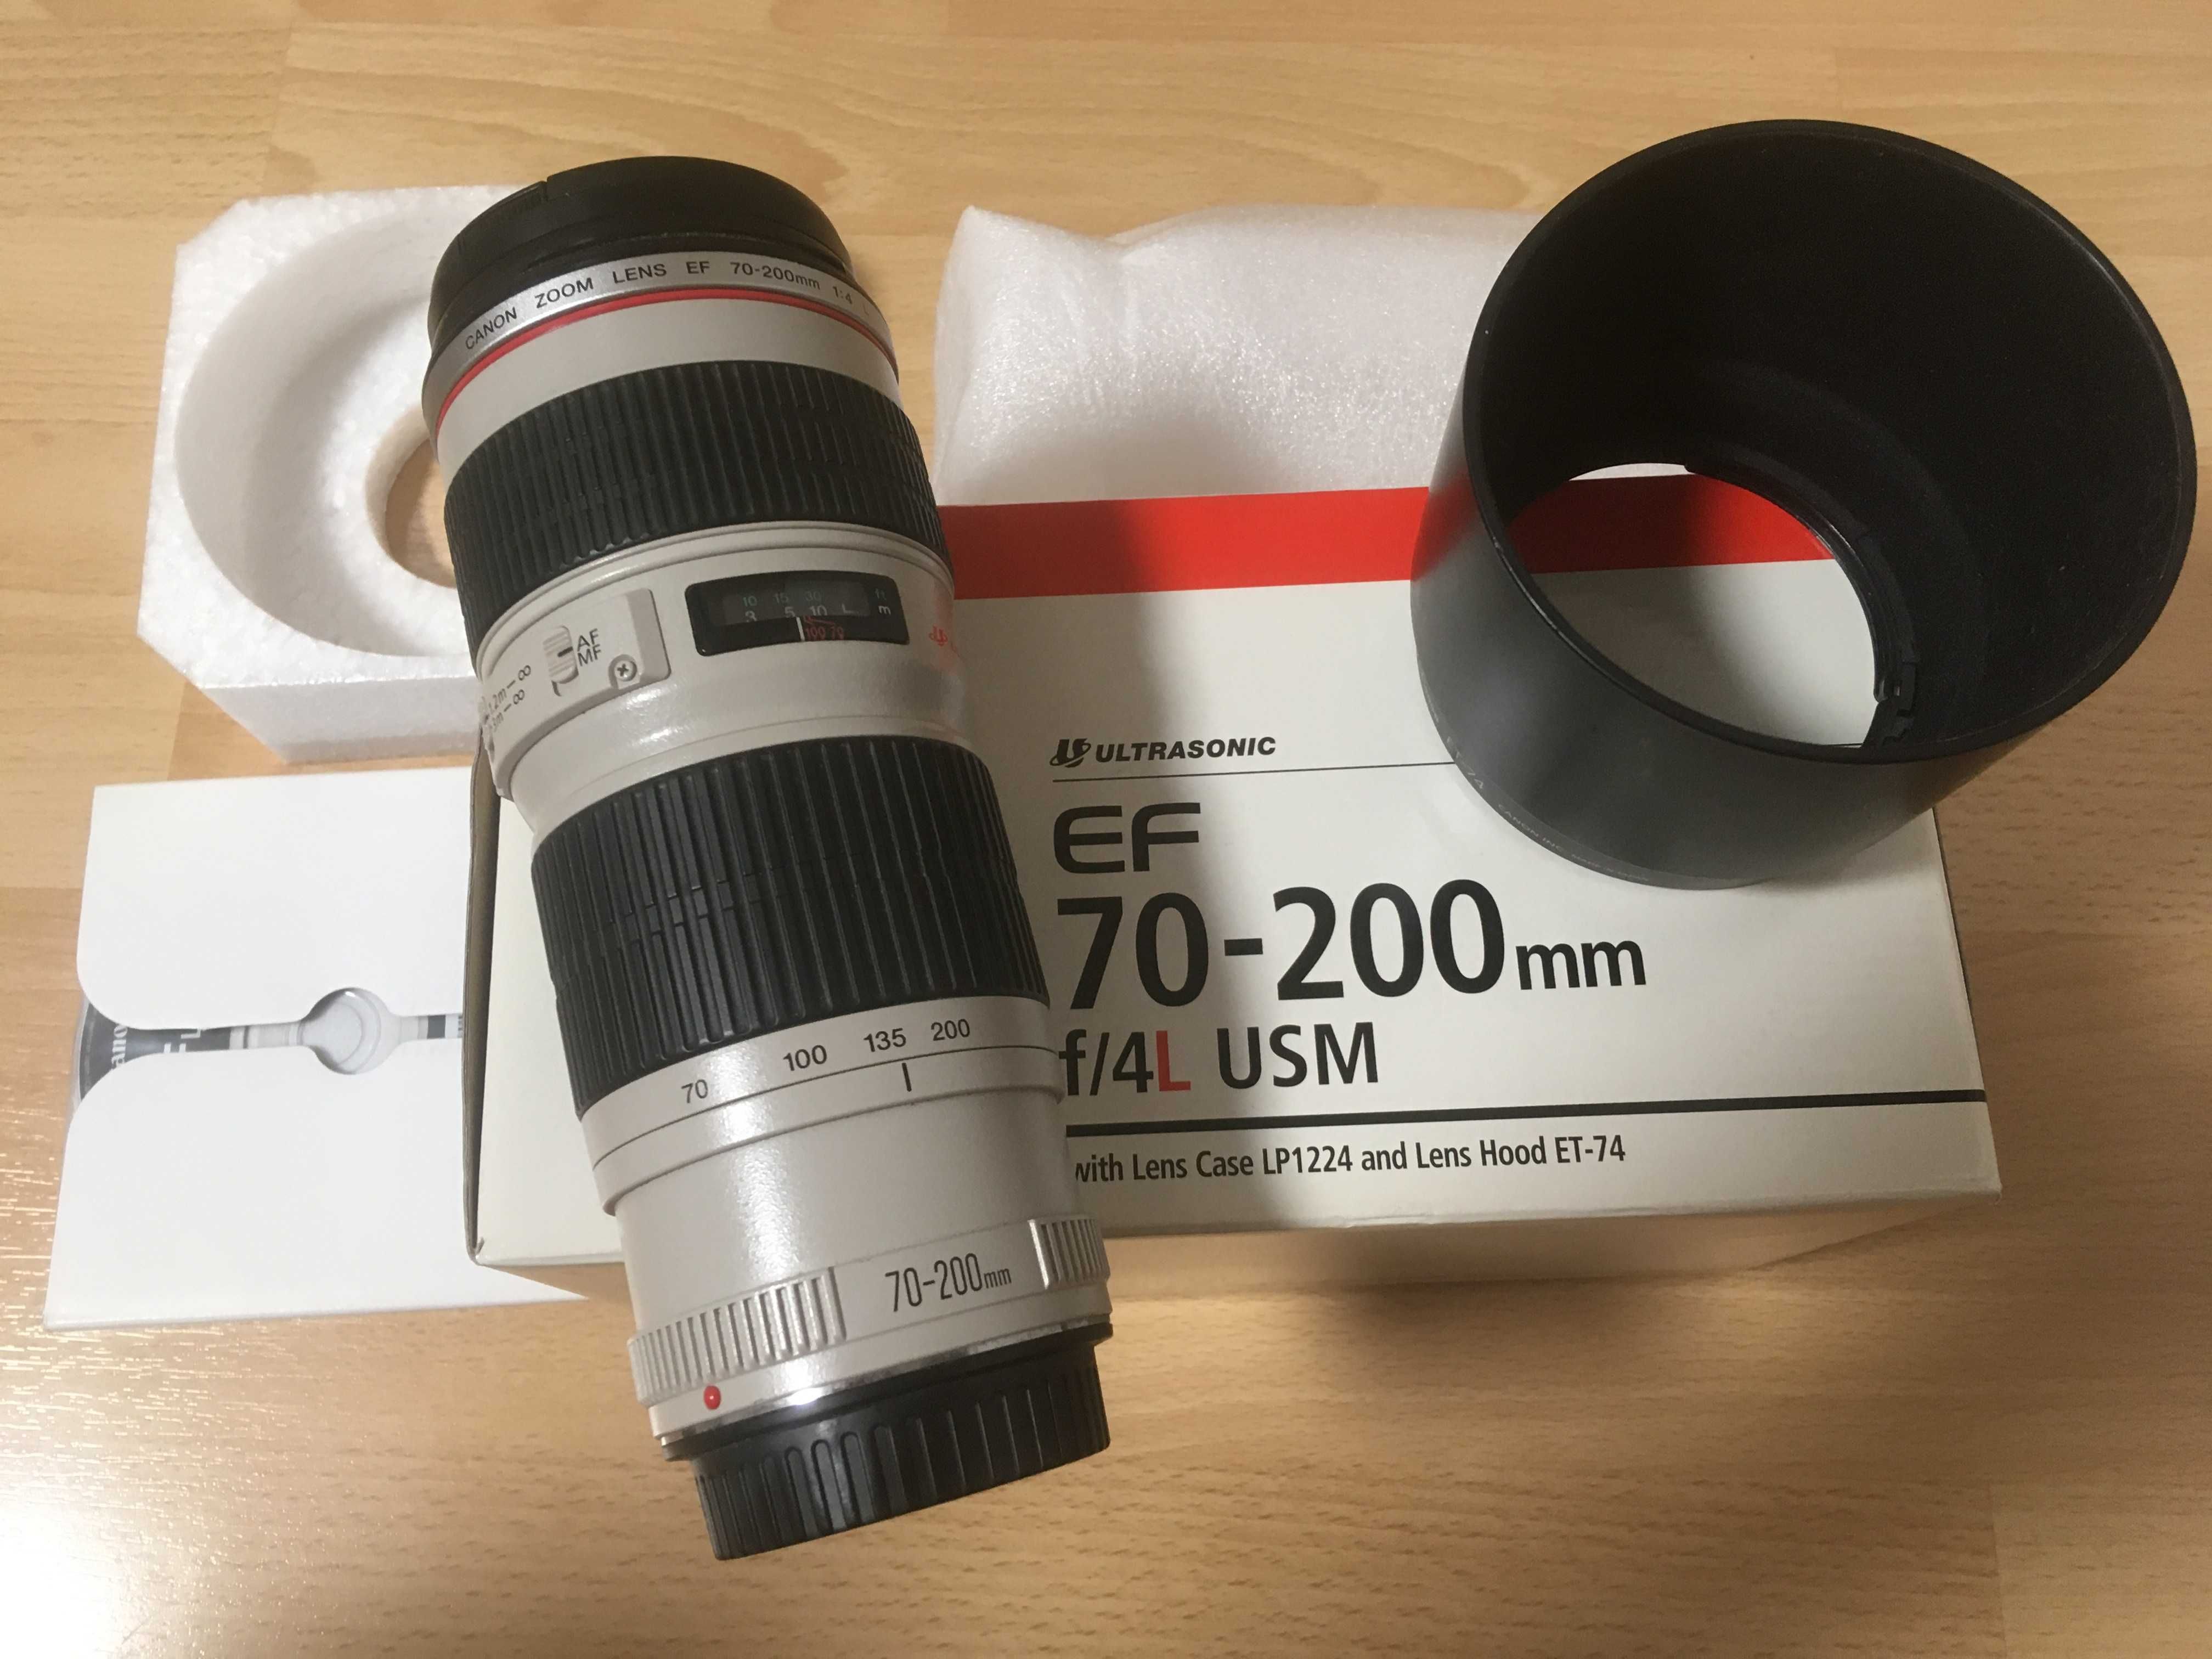 Canon EF 70-200 f4 L